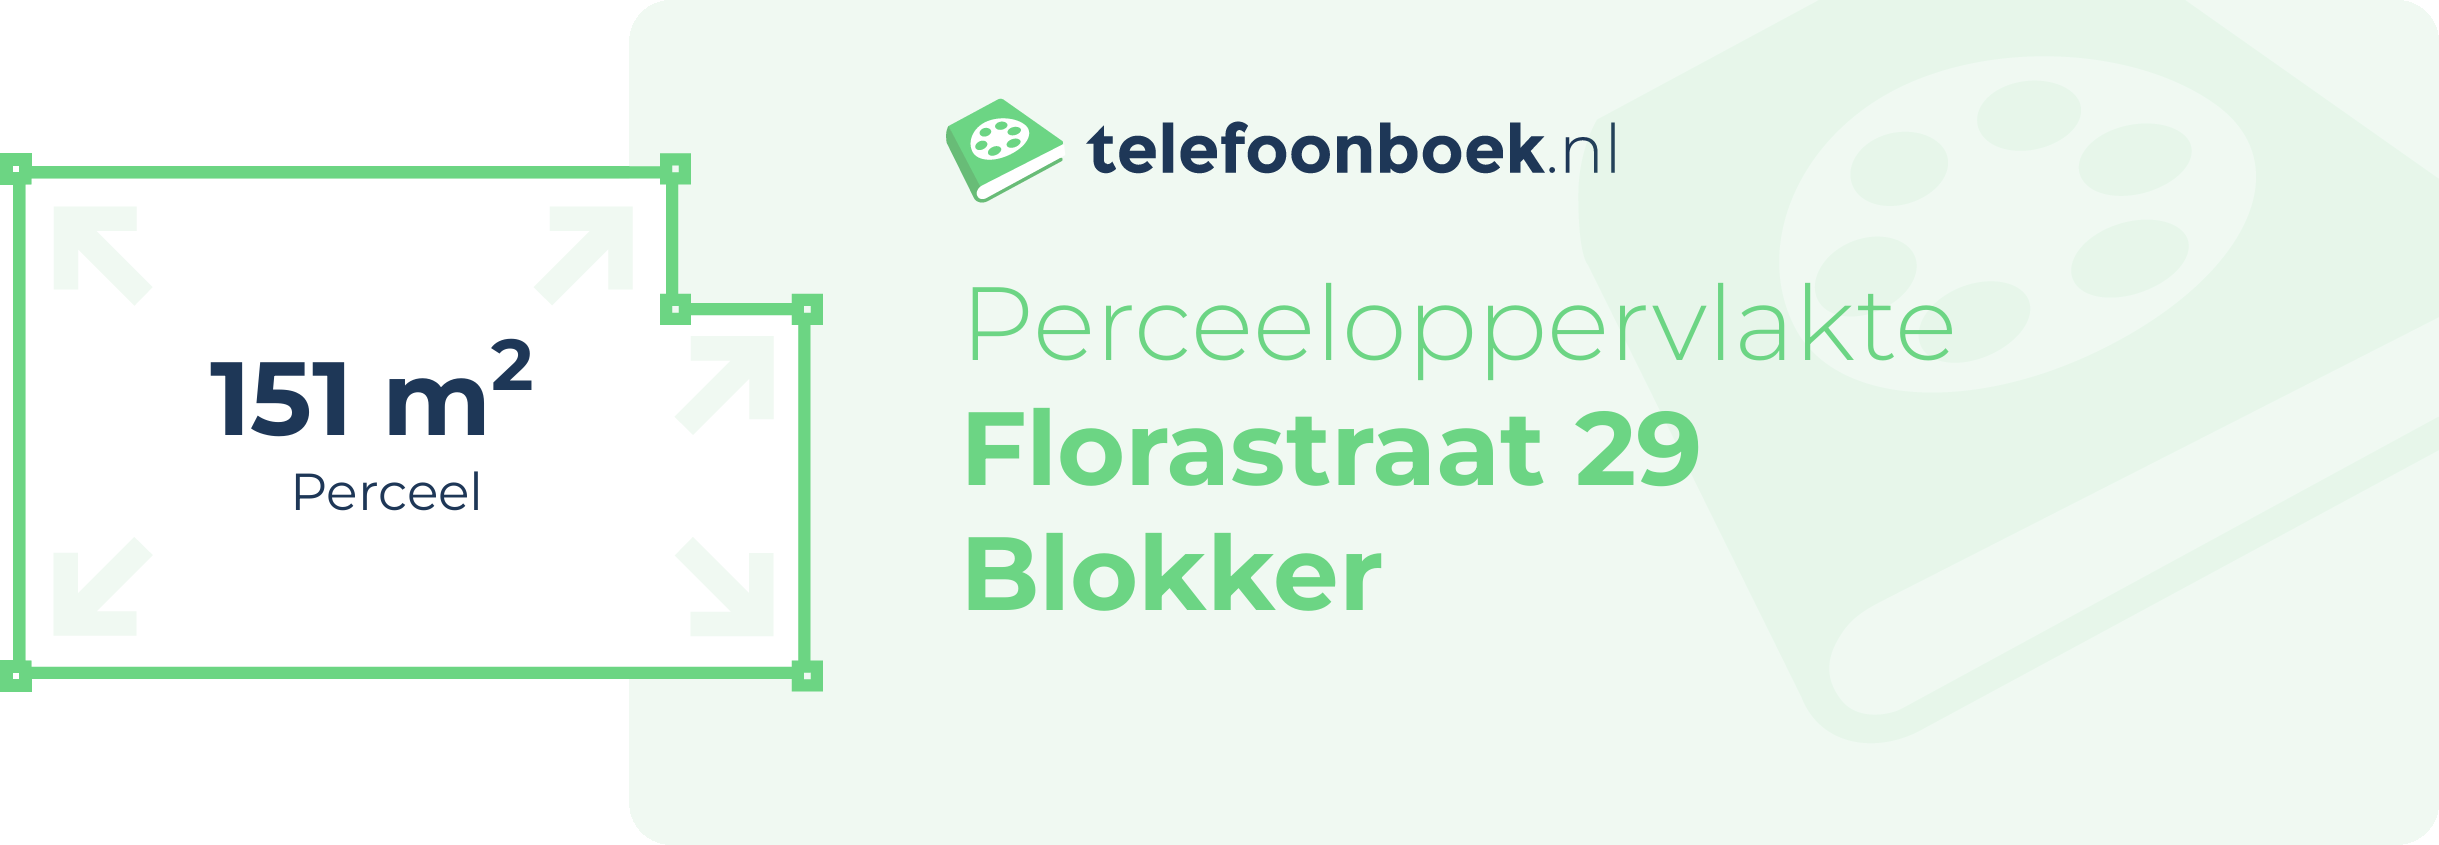 Perceeloppervlakte Florastraat 29 Blokker